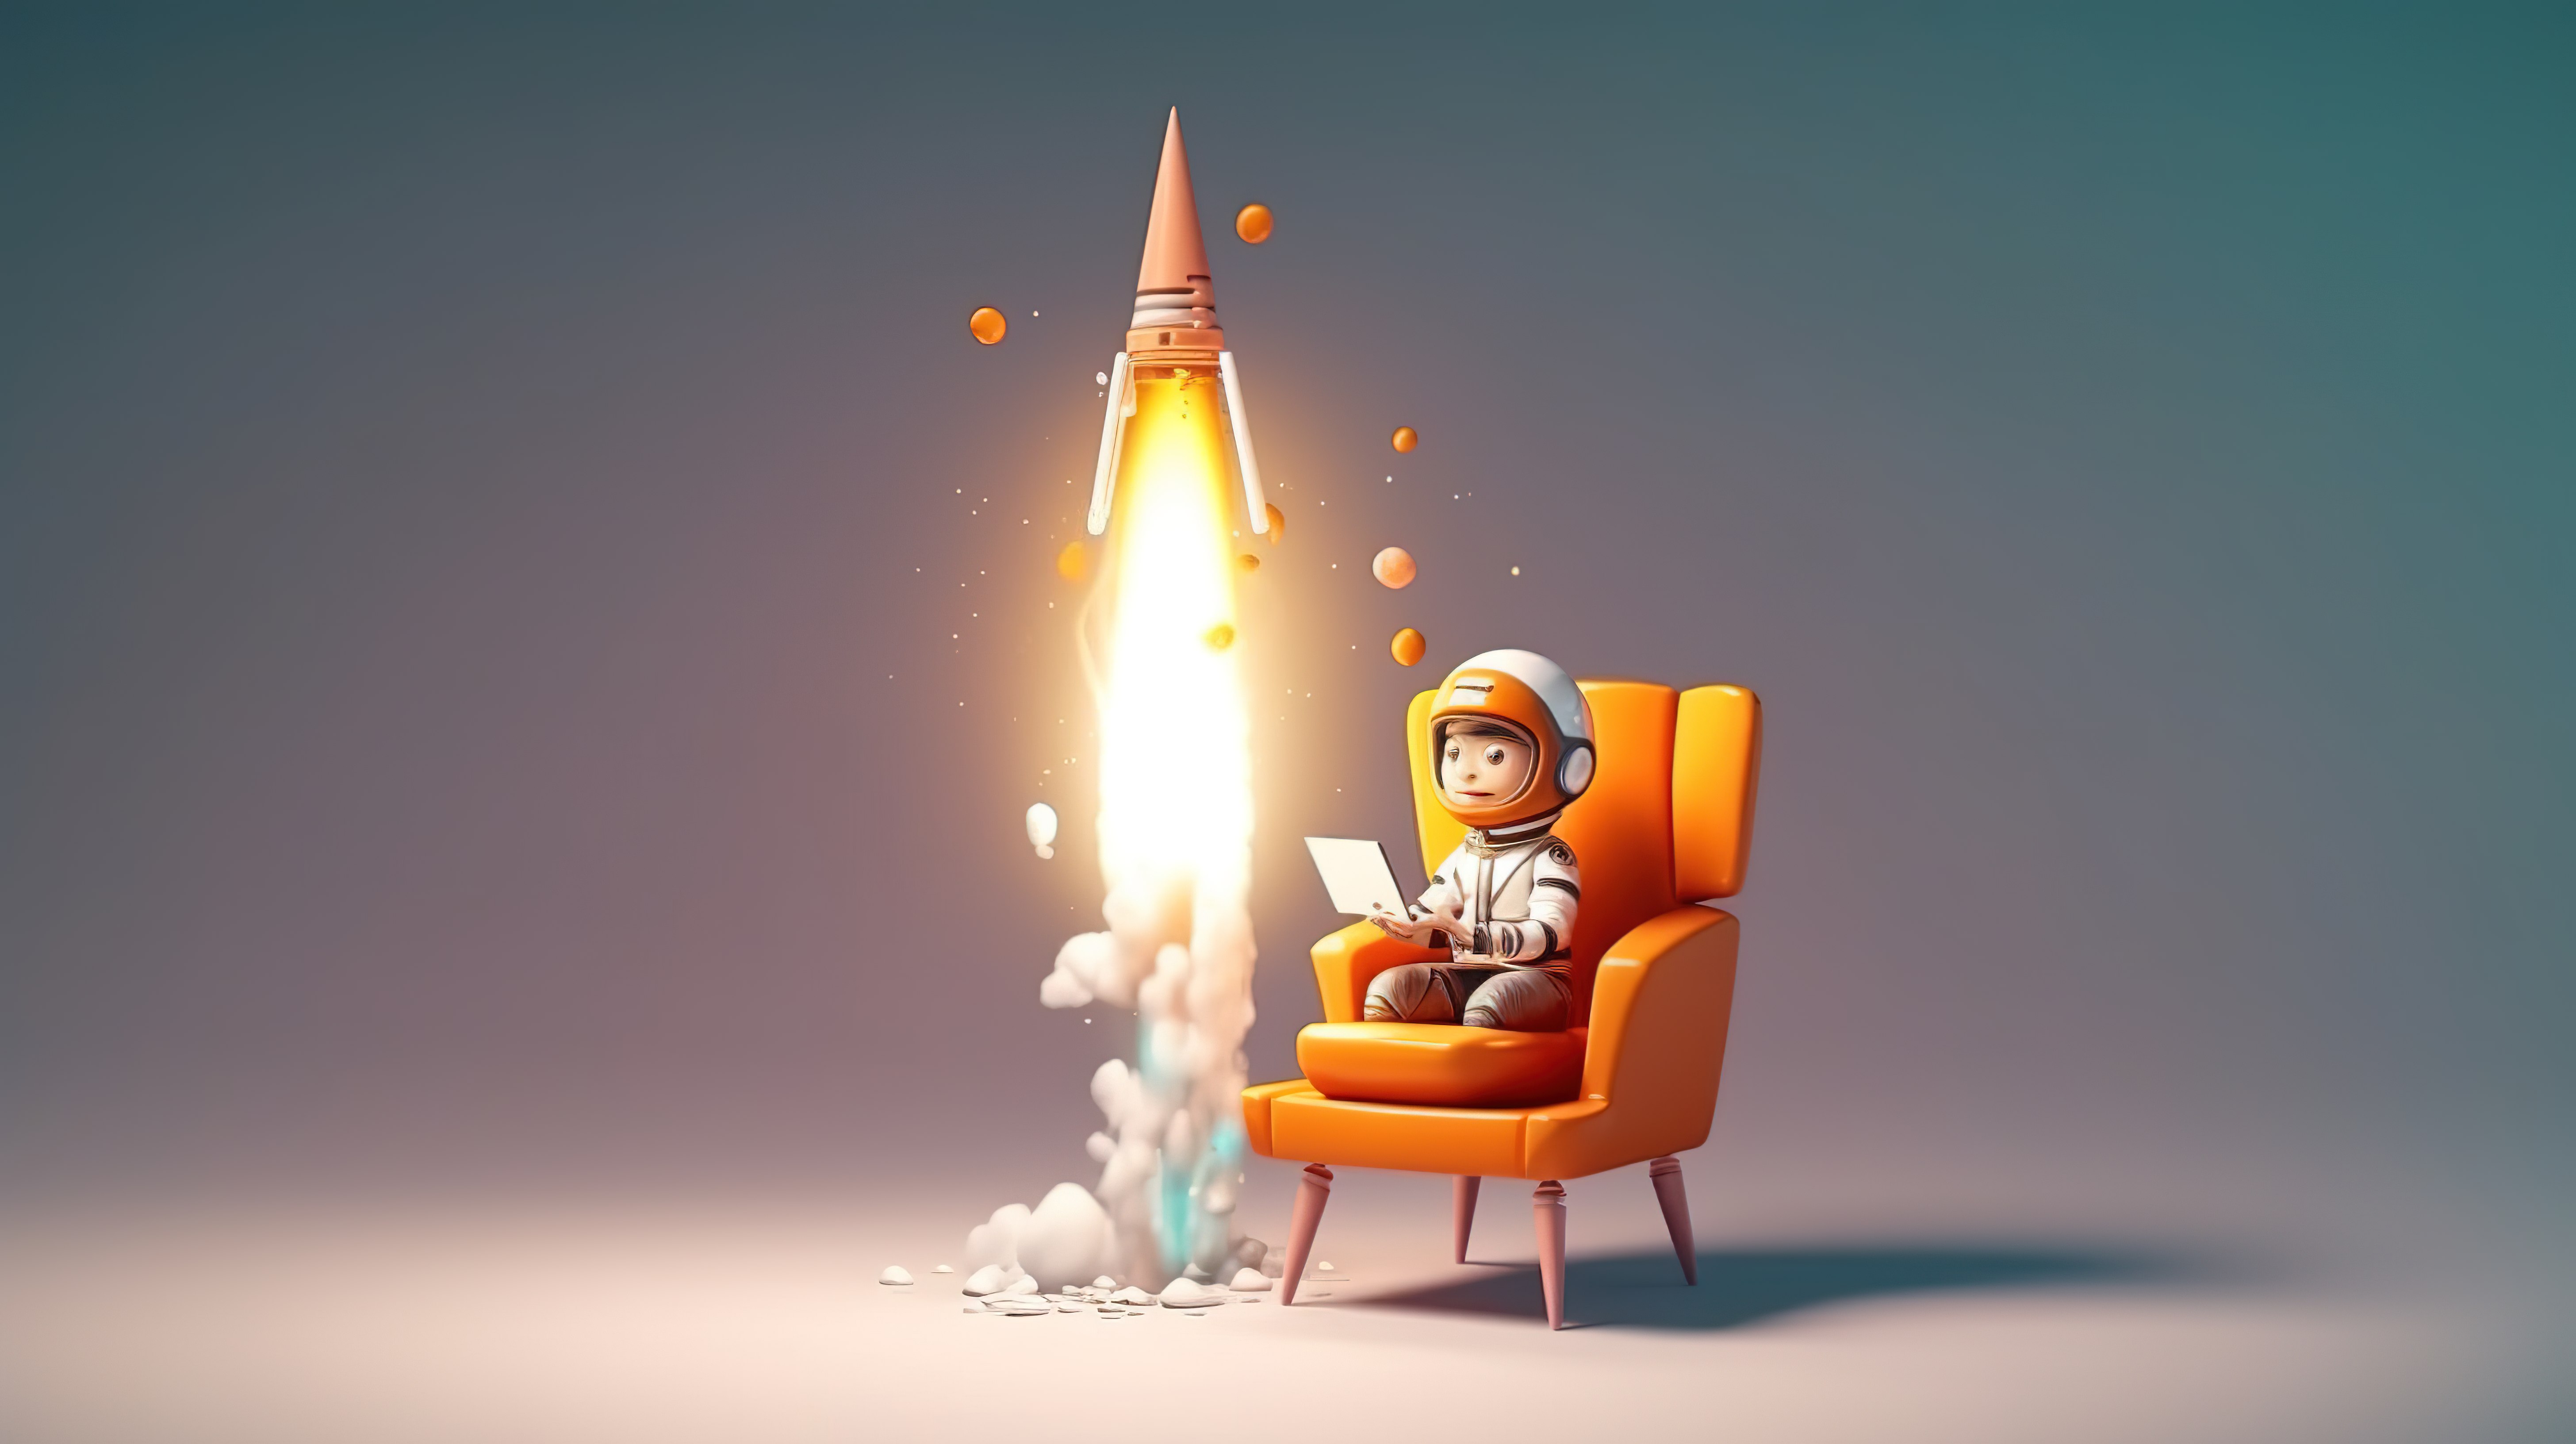 卡通人物点燃火箭 3D 创新和创业概念的有趣表现图片